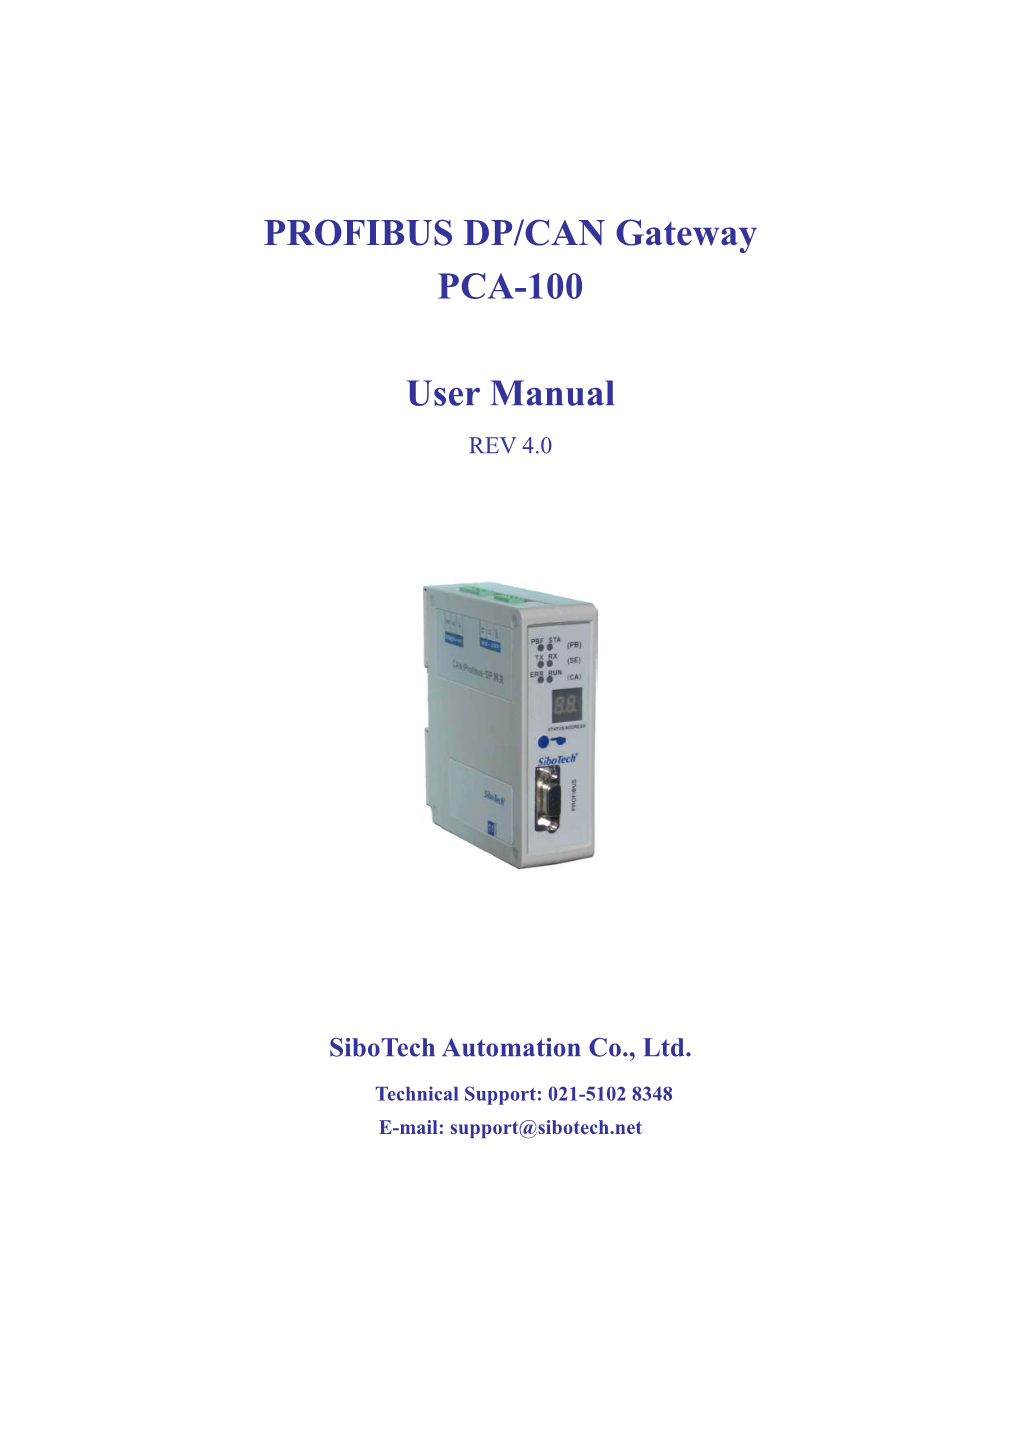 PROFIBUS DP/CAN Gateway PCA-100 User Manual